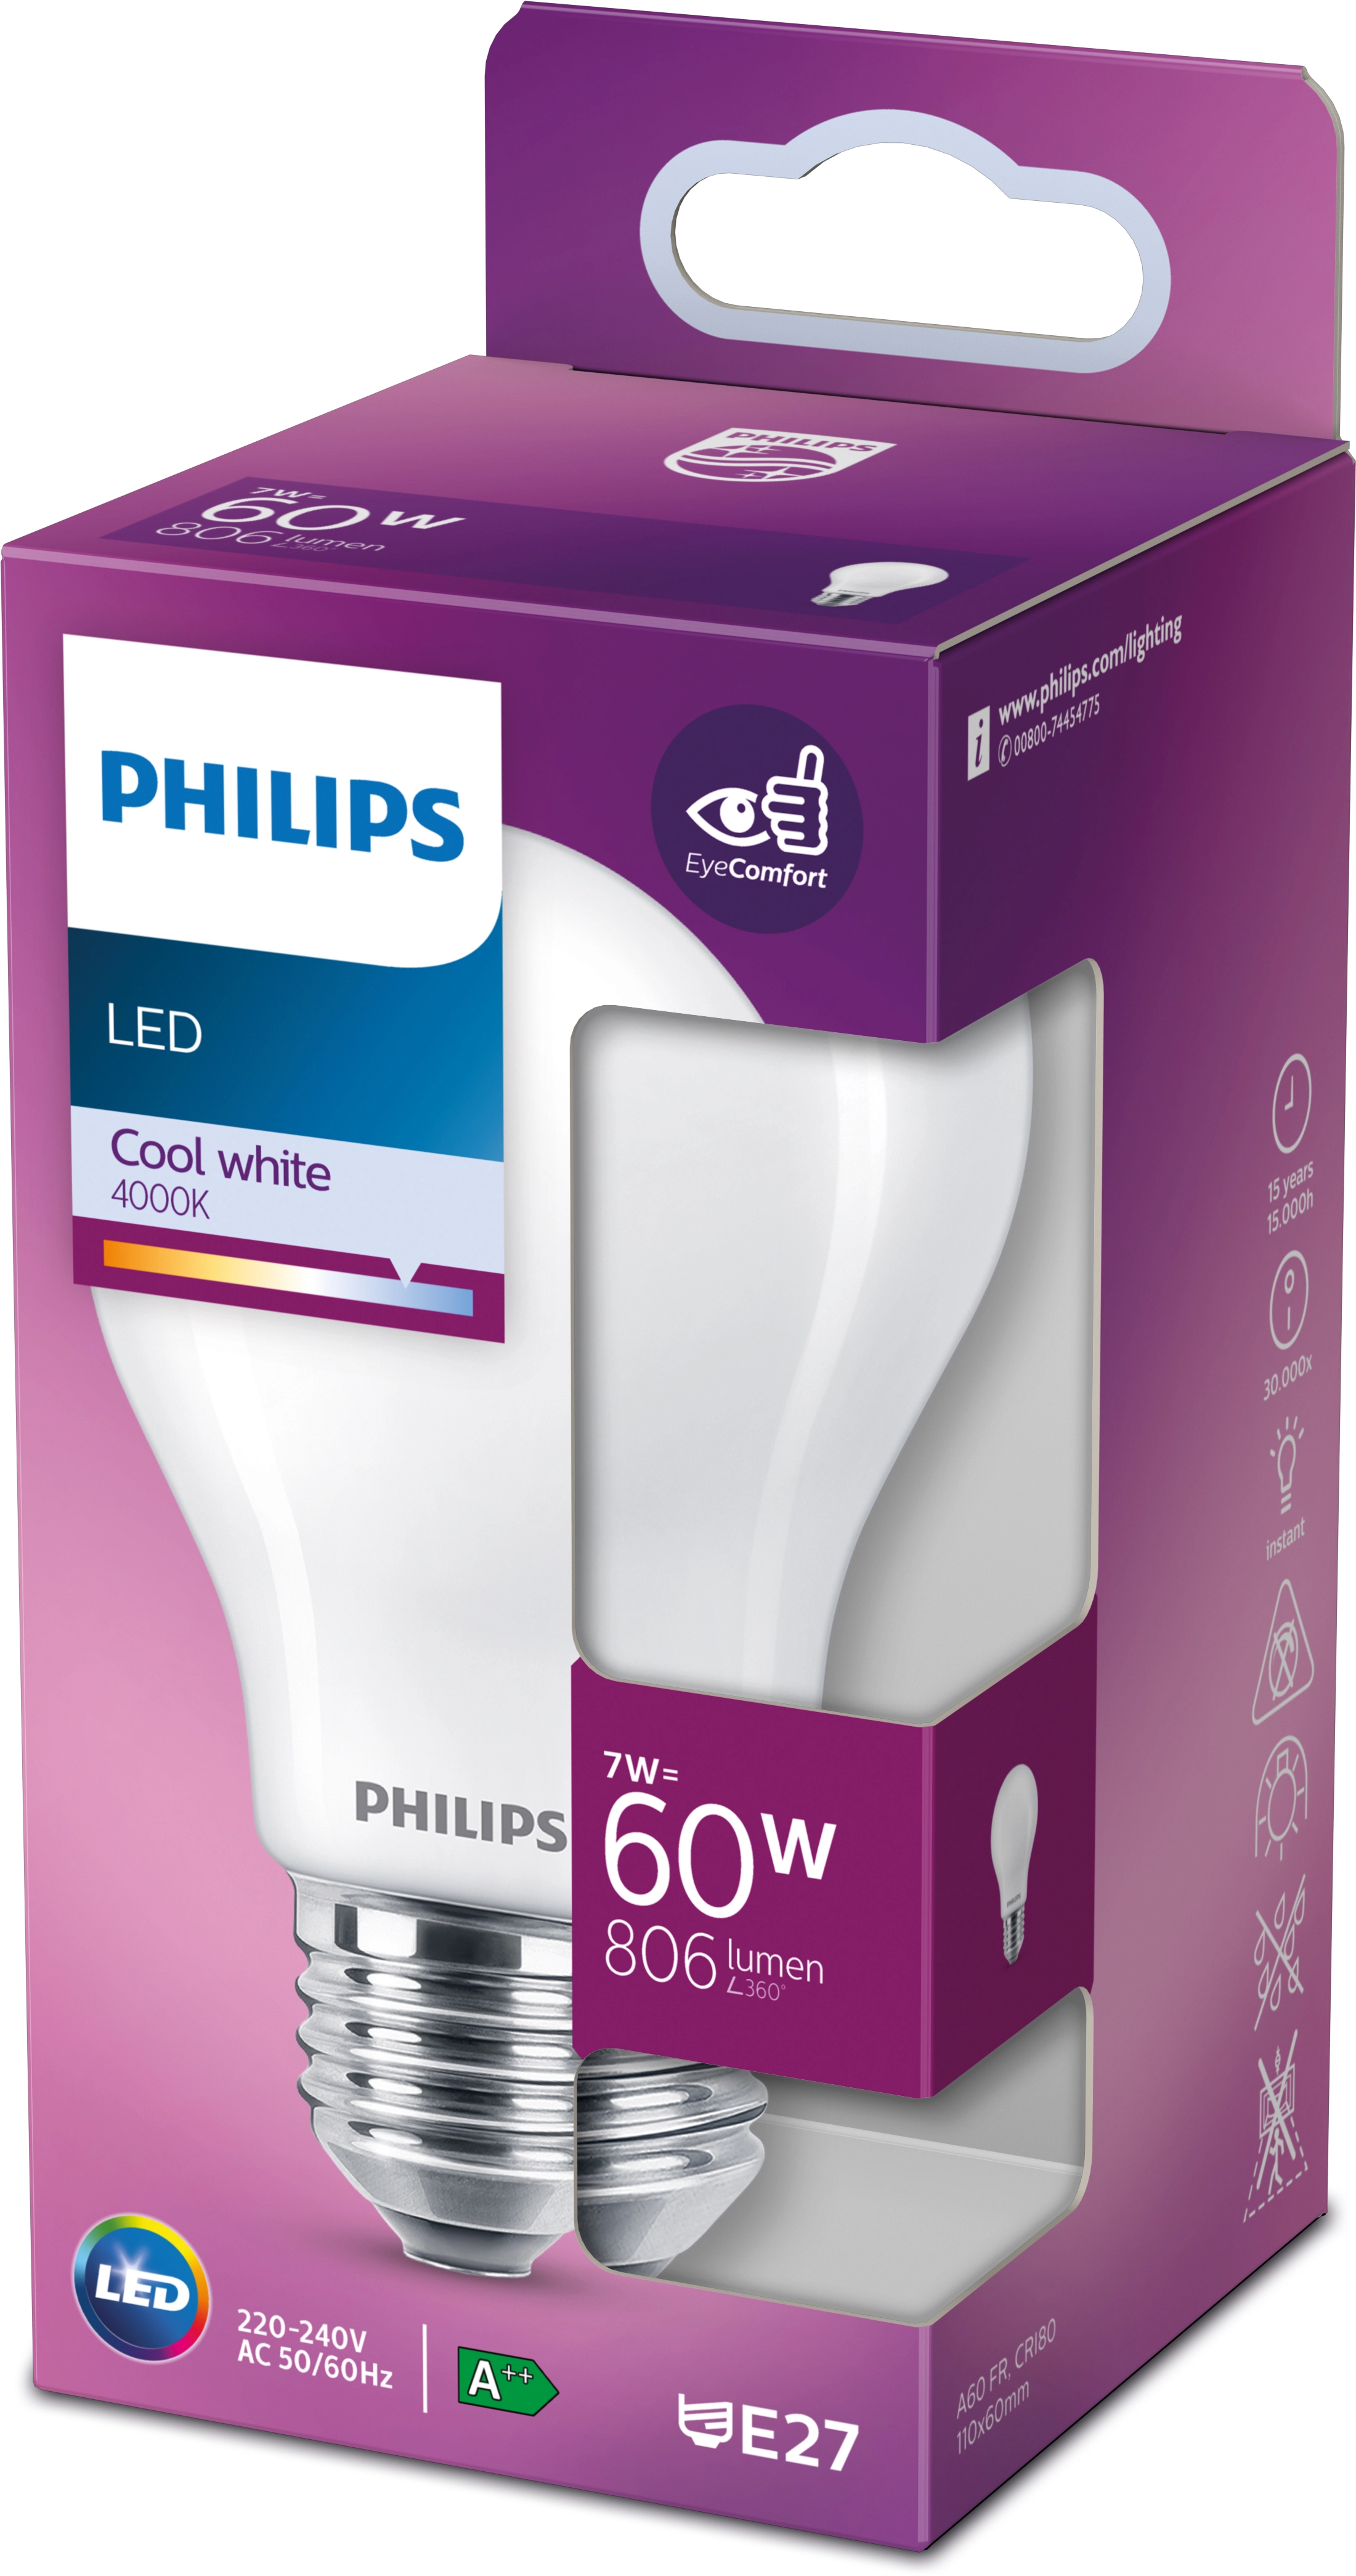 Ampoules Philips Verre L 5 P 5 H 5 cm